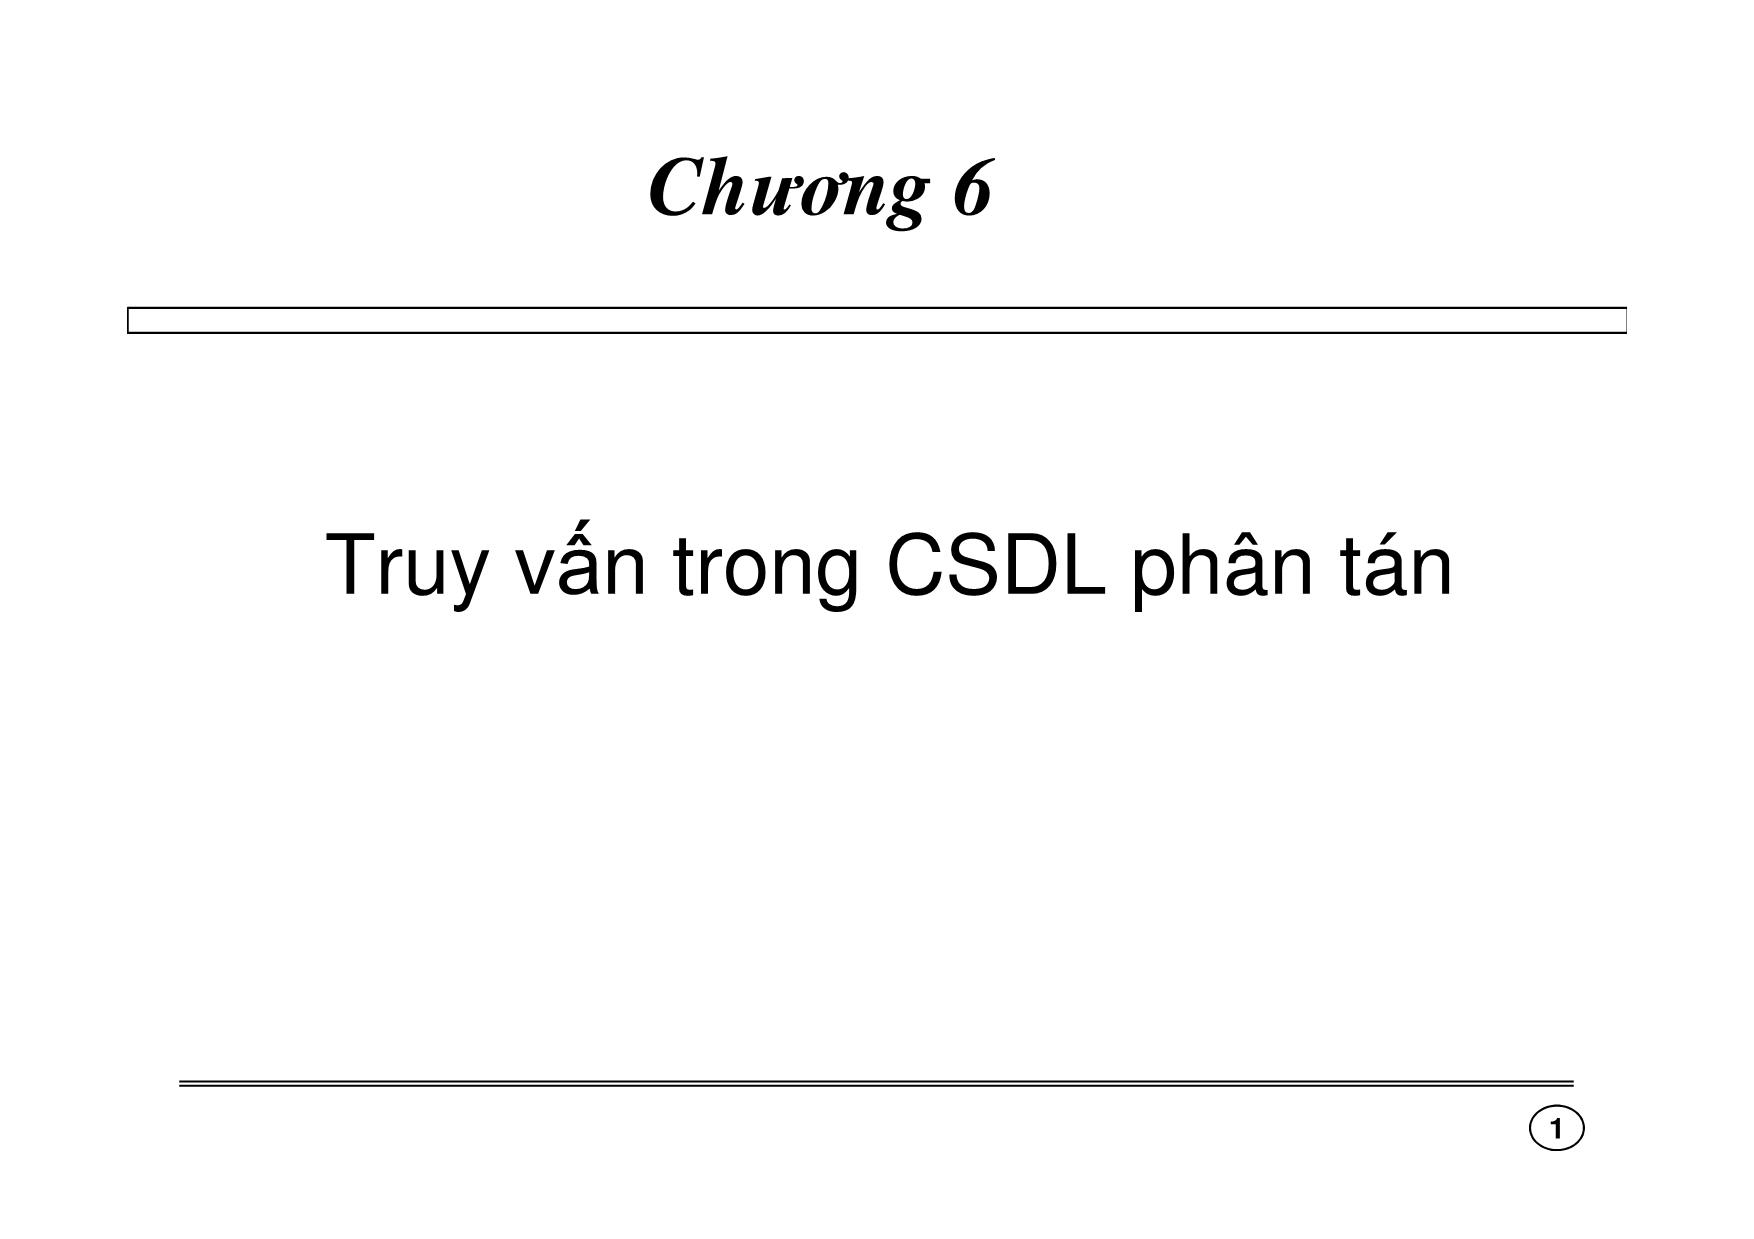 Truy vấn trong CSDL phân tán trang 1